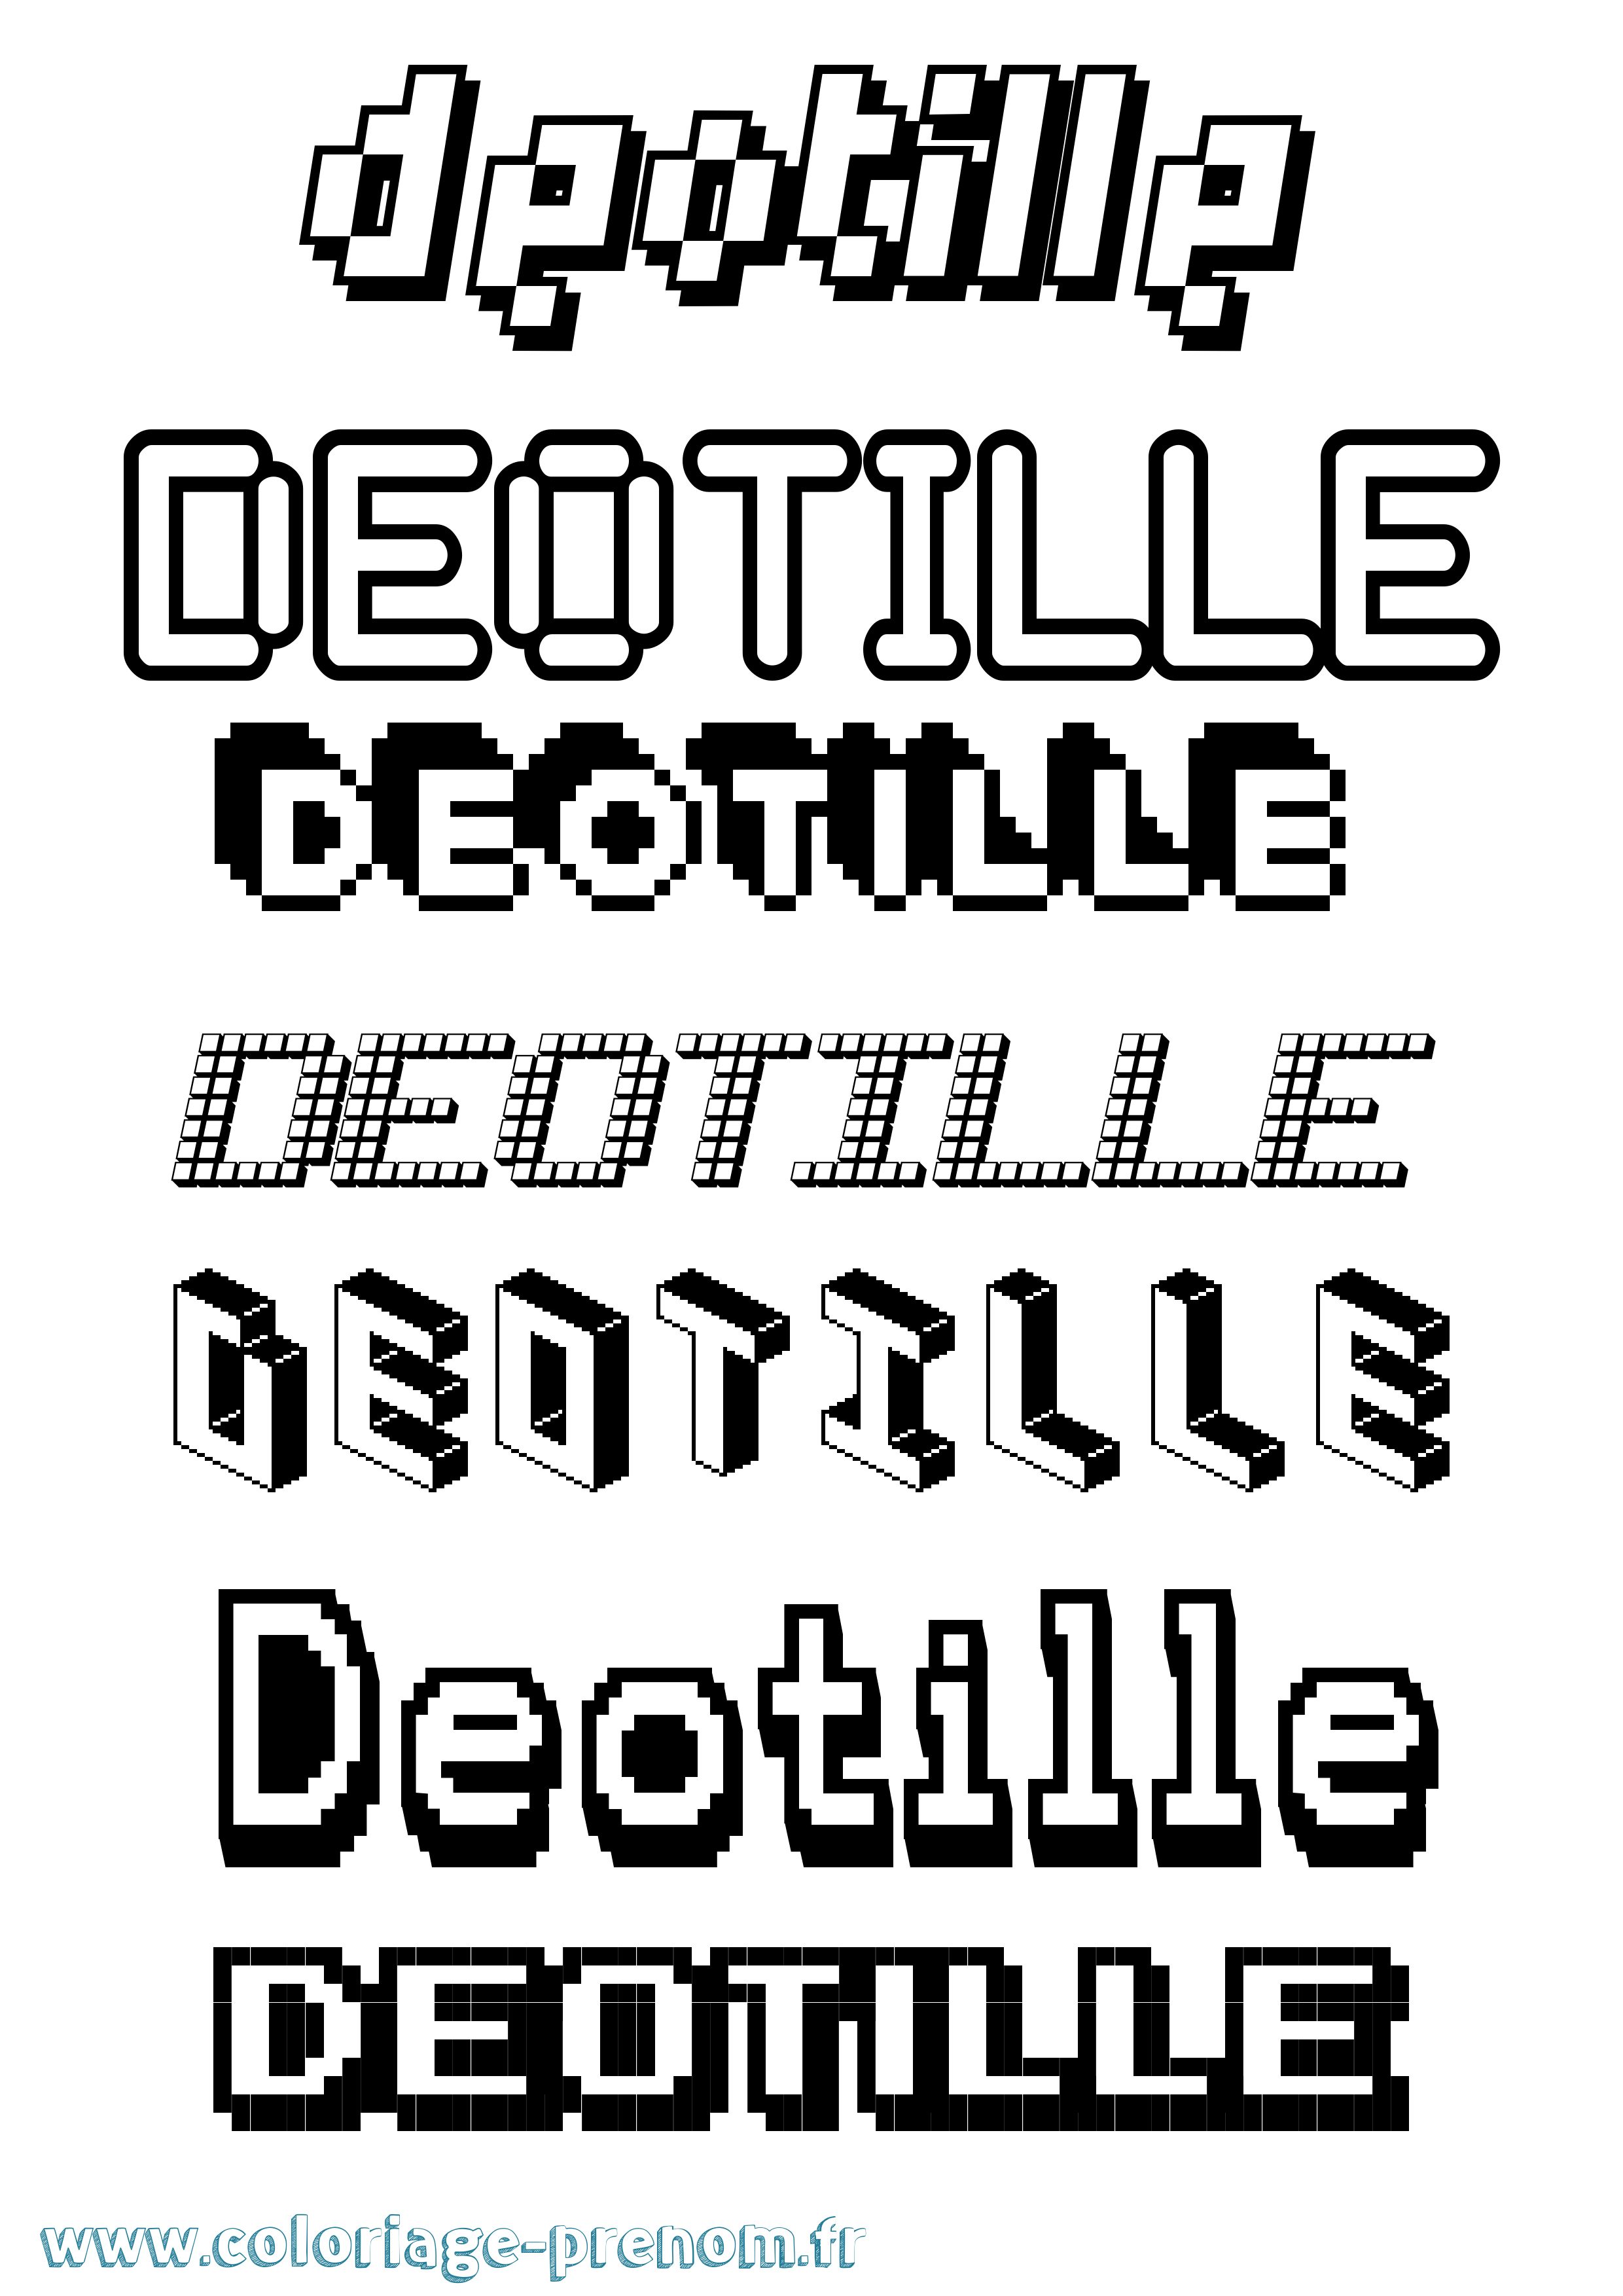 Coloriage prénom Deotille Pixel